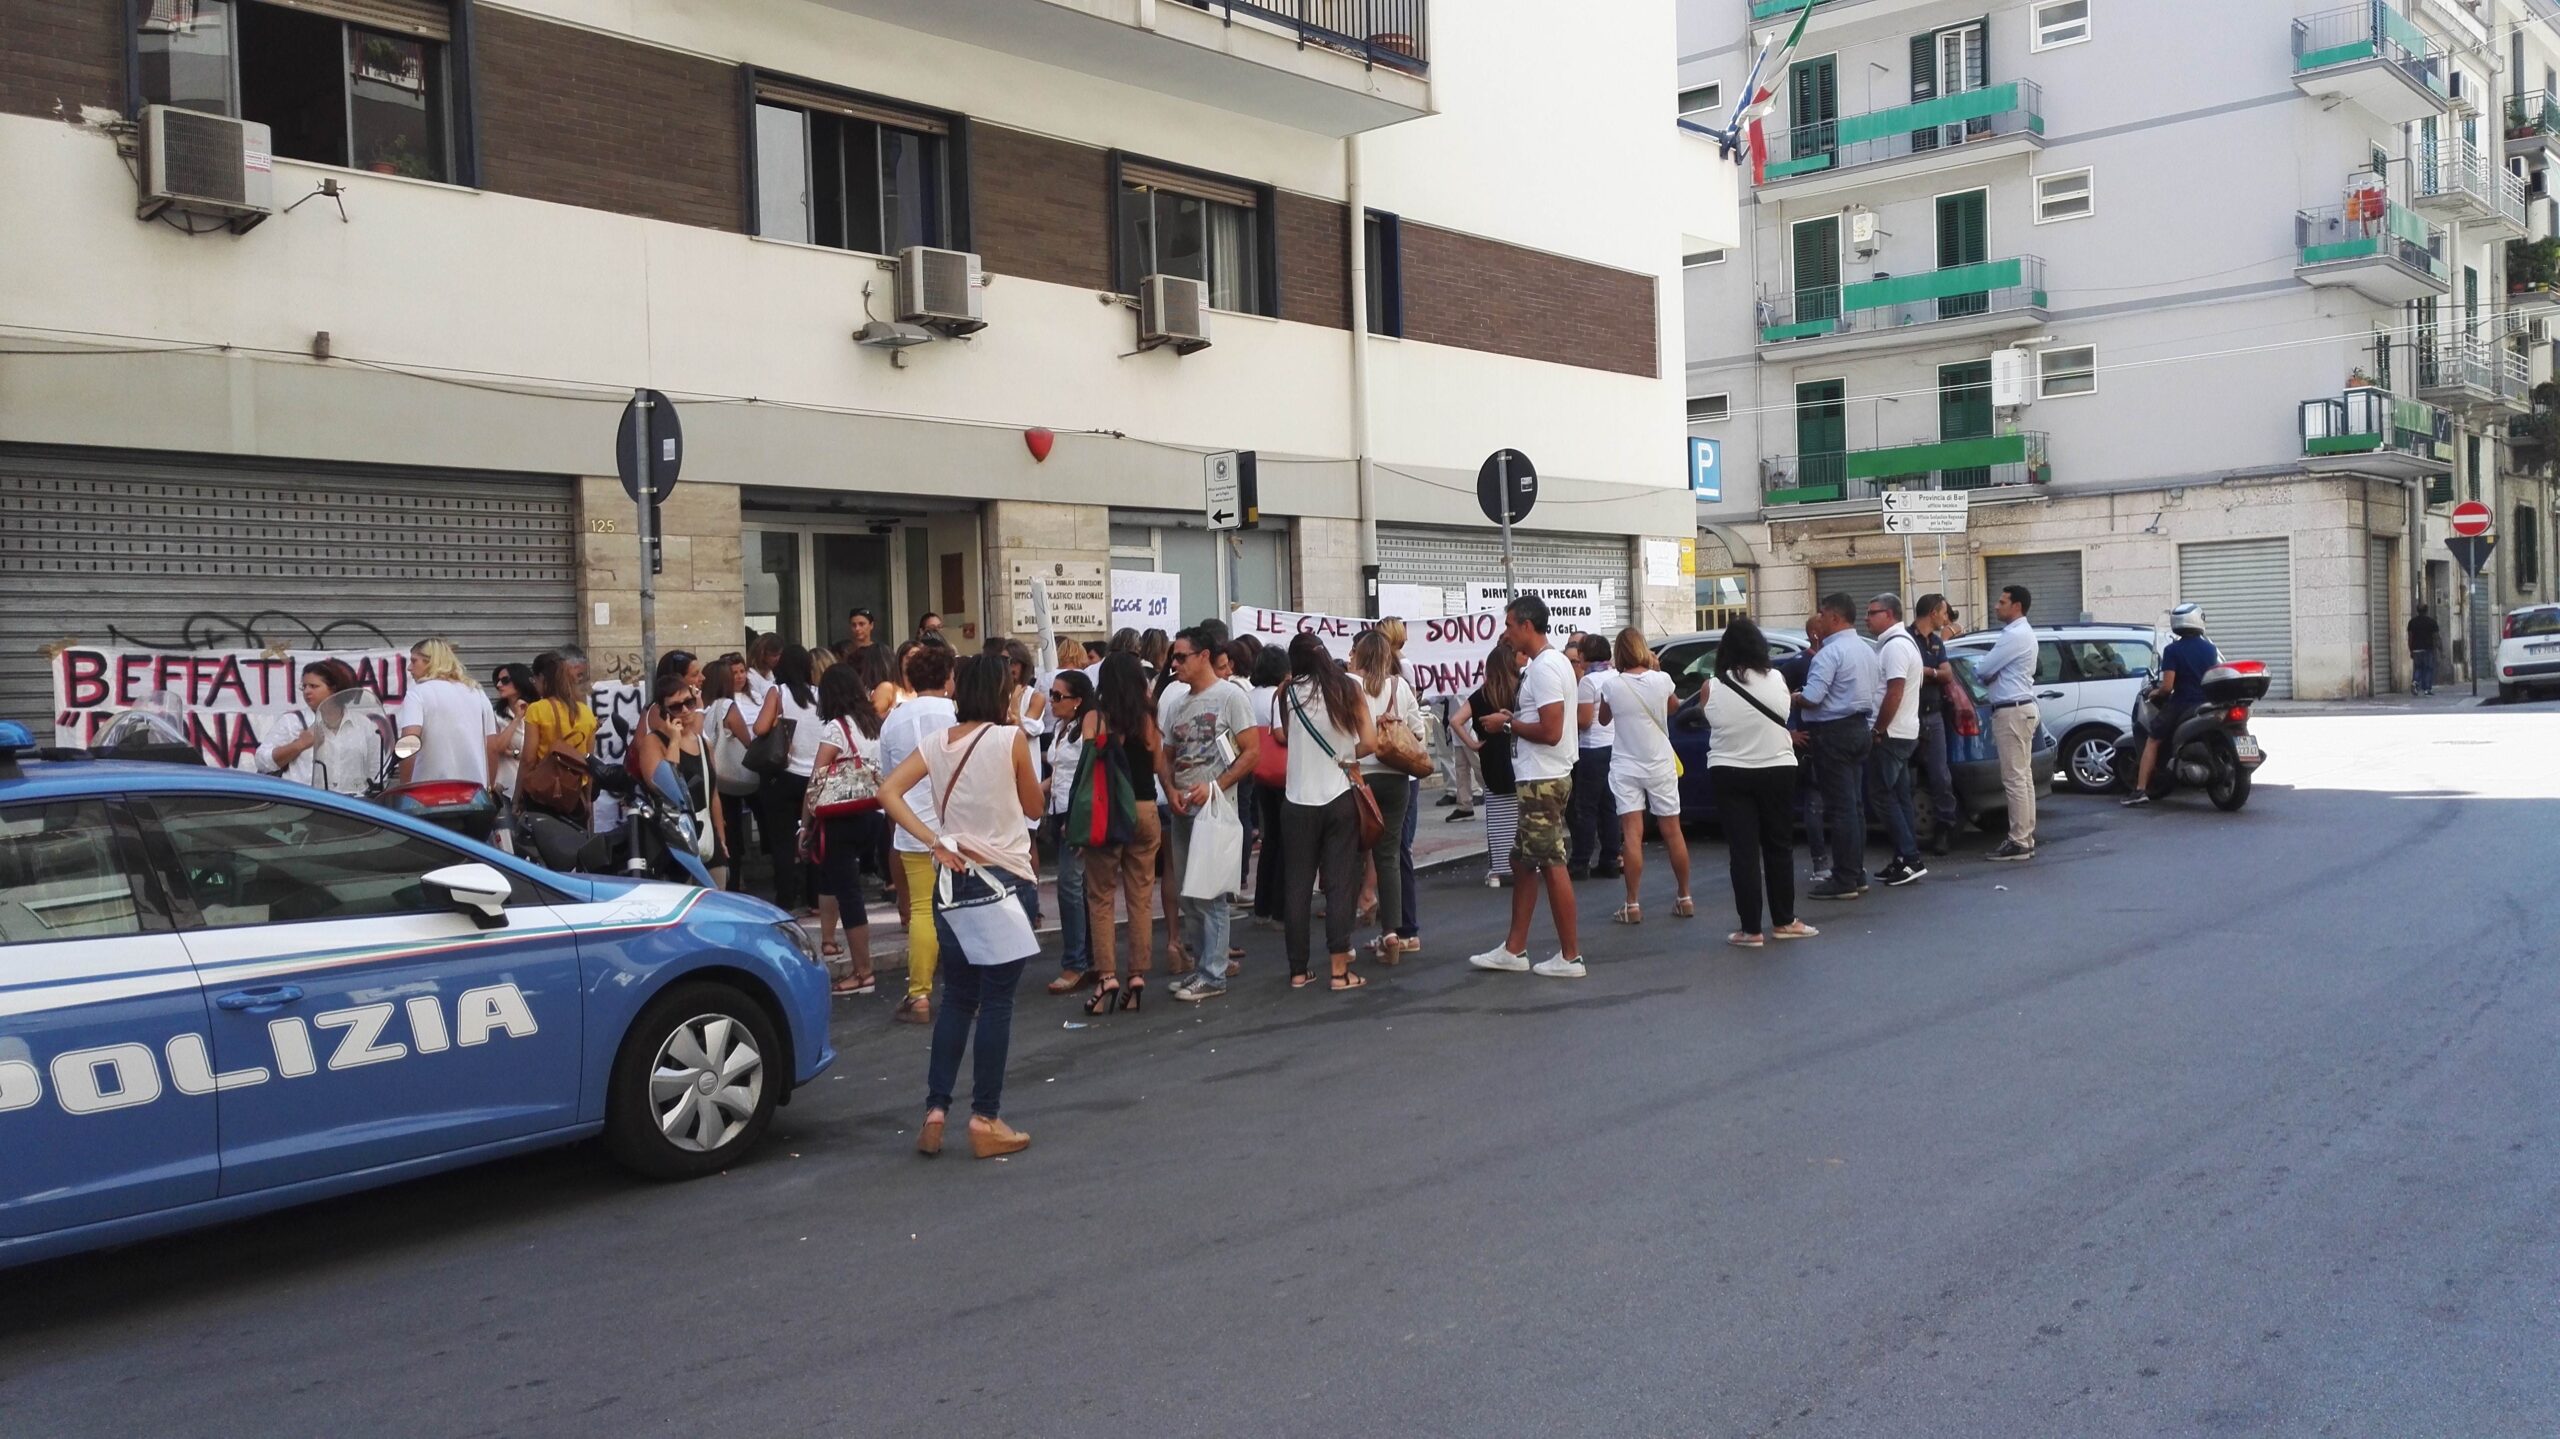 La protesta dei docenti precari davanti alla sede dell'Ufficio scolastico regionale